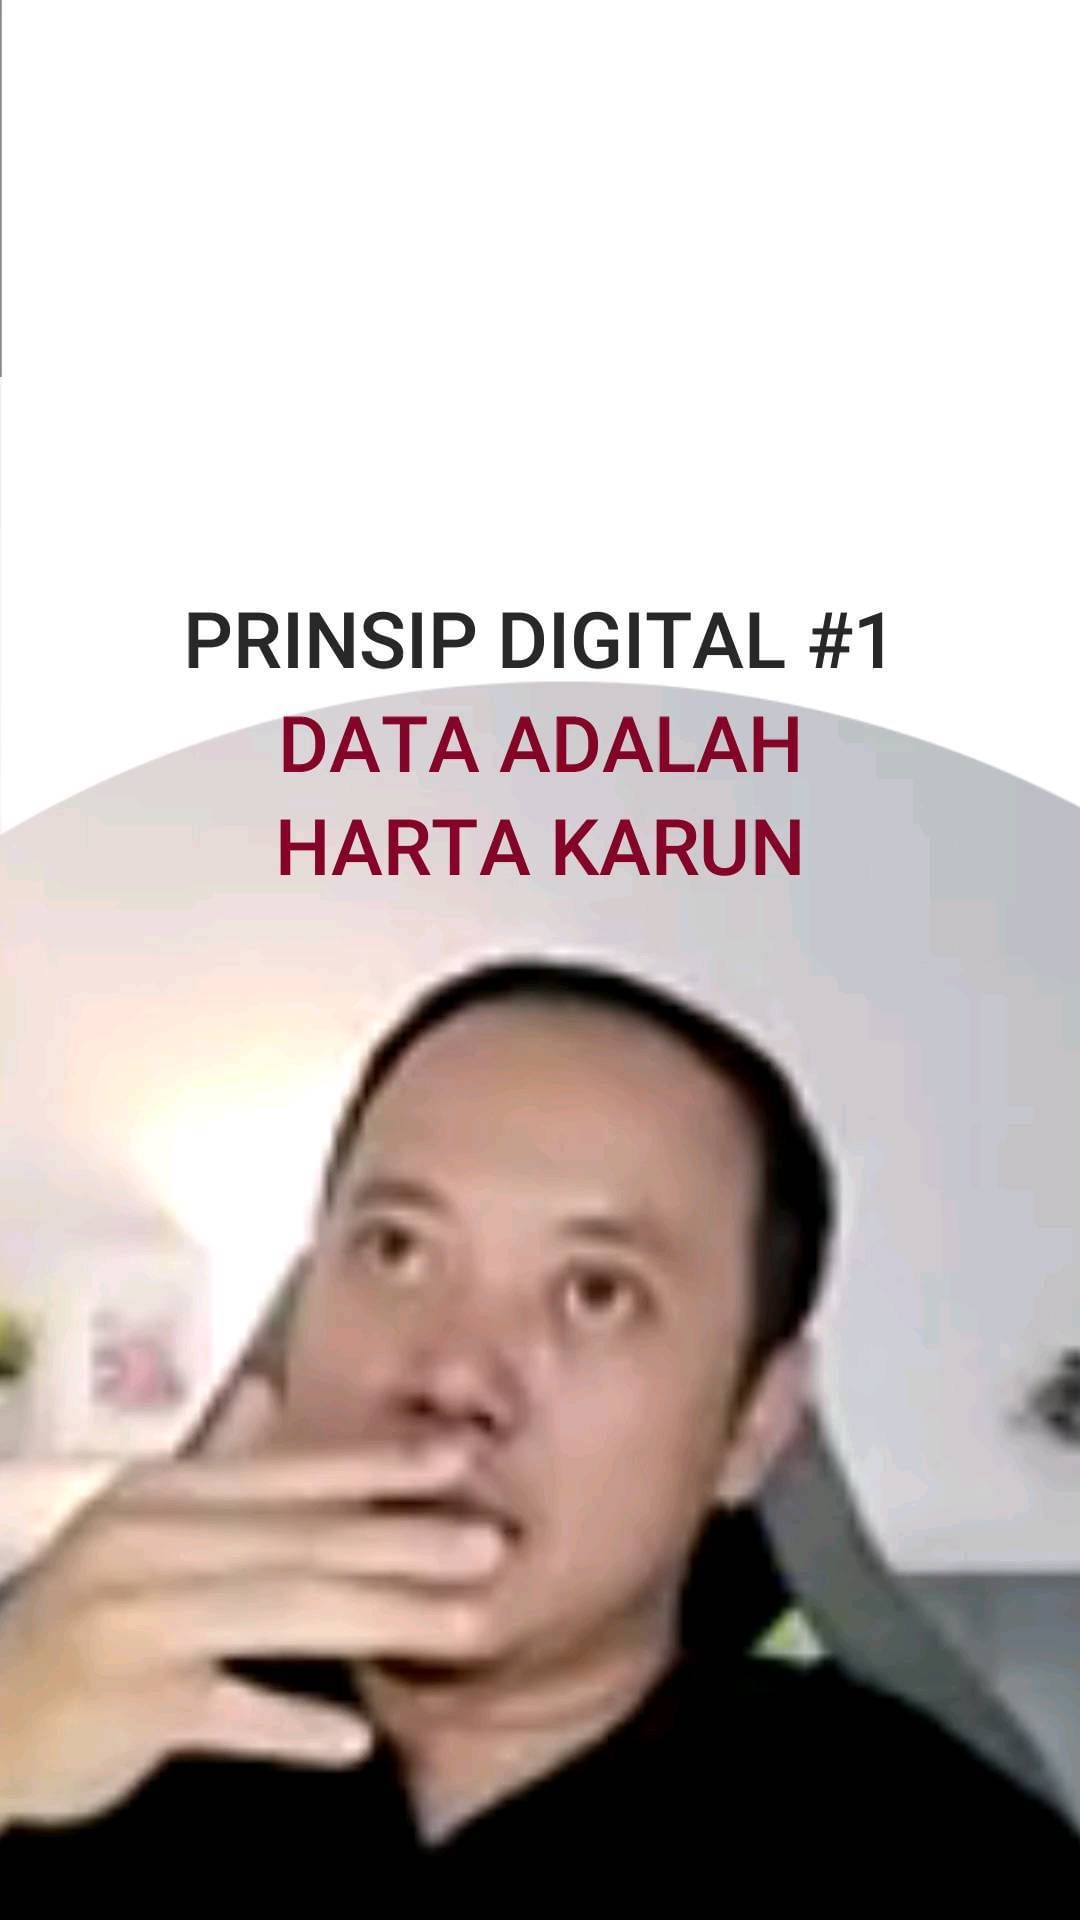 Data adalah harga. Prinsip digital #1 #data #digitalmarketing #reelsinstagram #viralindonesia #viral          ...